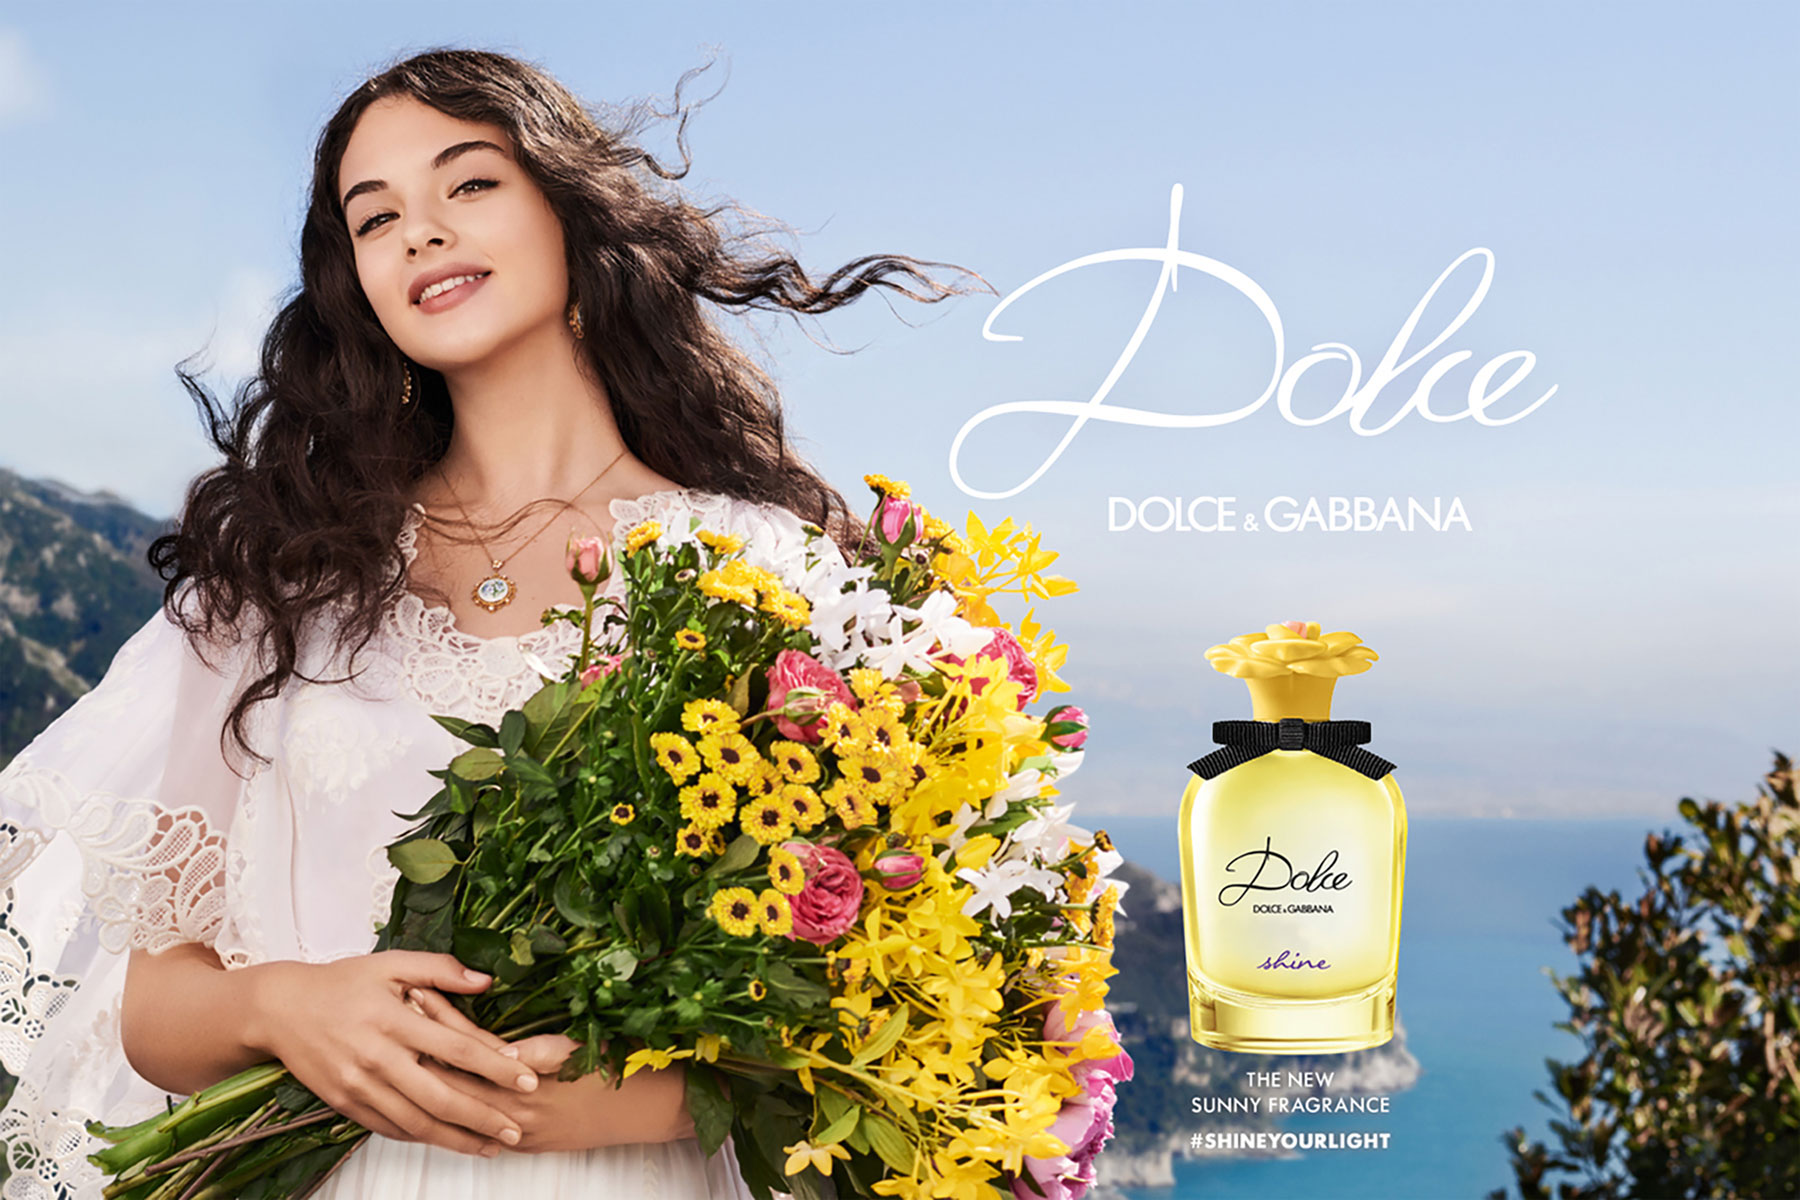 Dolce & Gabbana Dolce Shine Perfume Ad